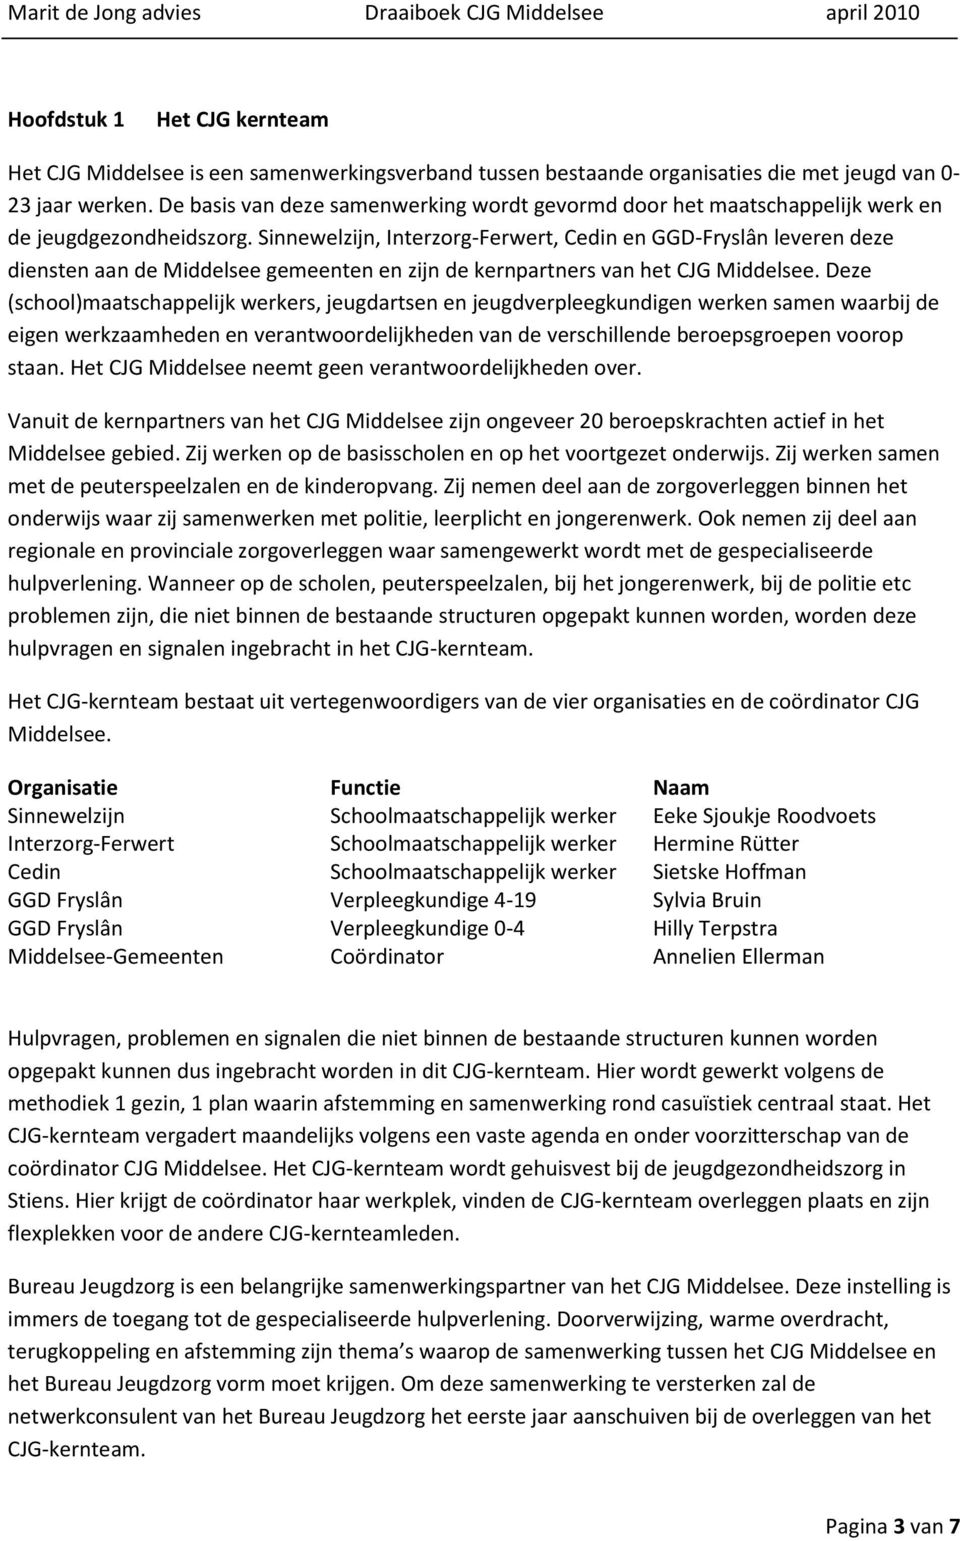 Sinnewelzijn, Interzorg-Ferwert, Cedin en GGD-Fryslân leveren deze diensten aan de Middelsee gemeenten en zijn de kernpartners van het CJG Middelsee.